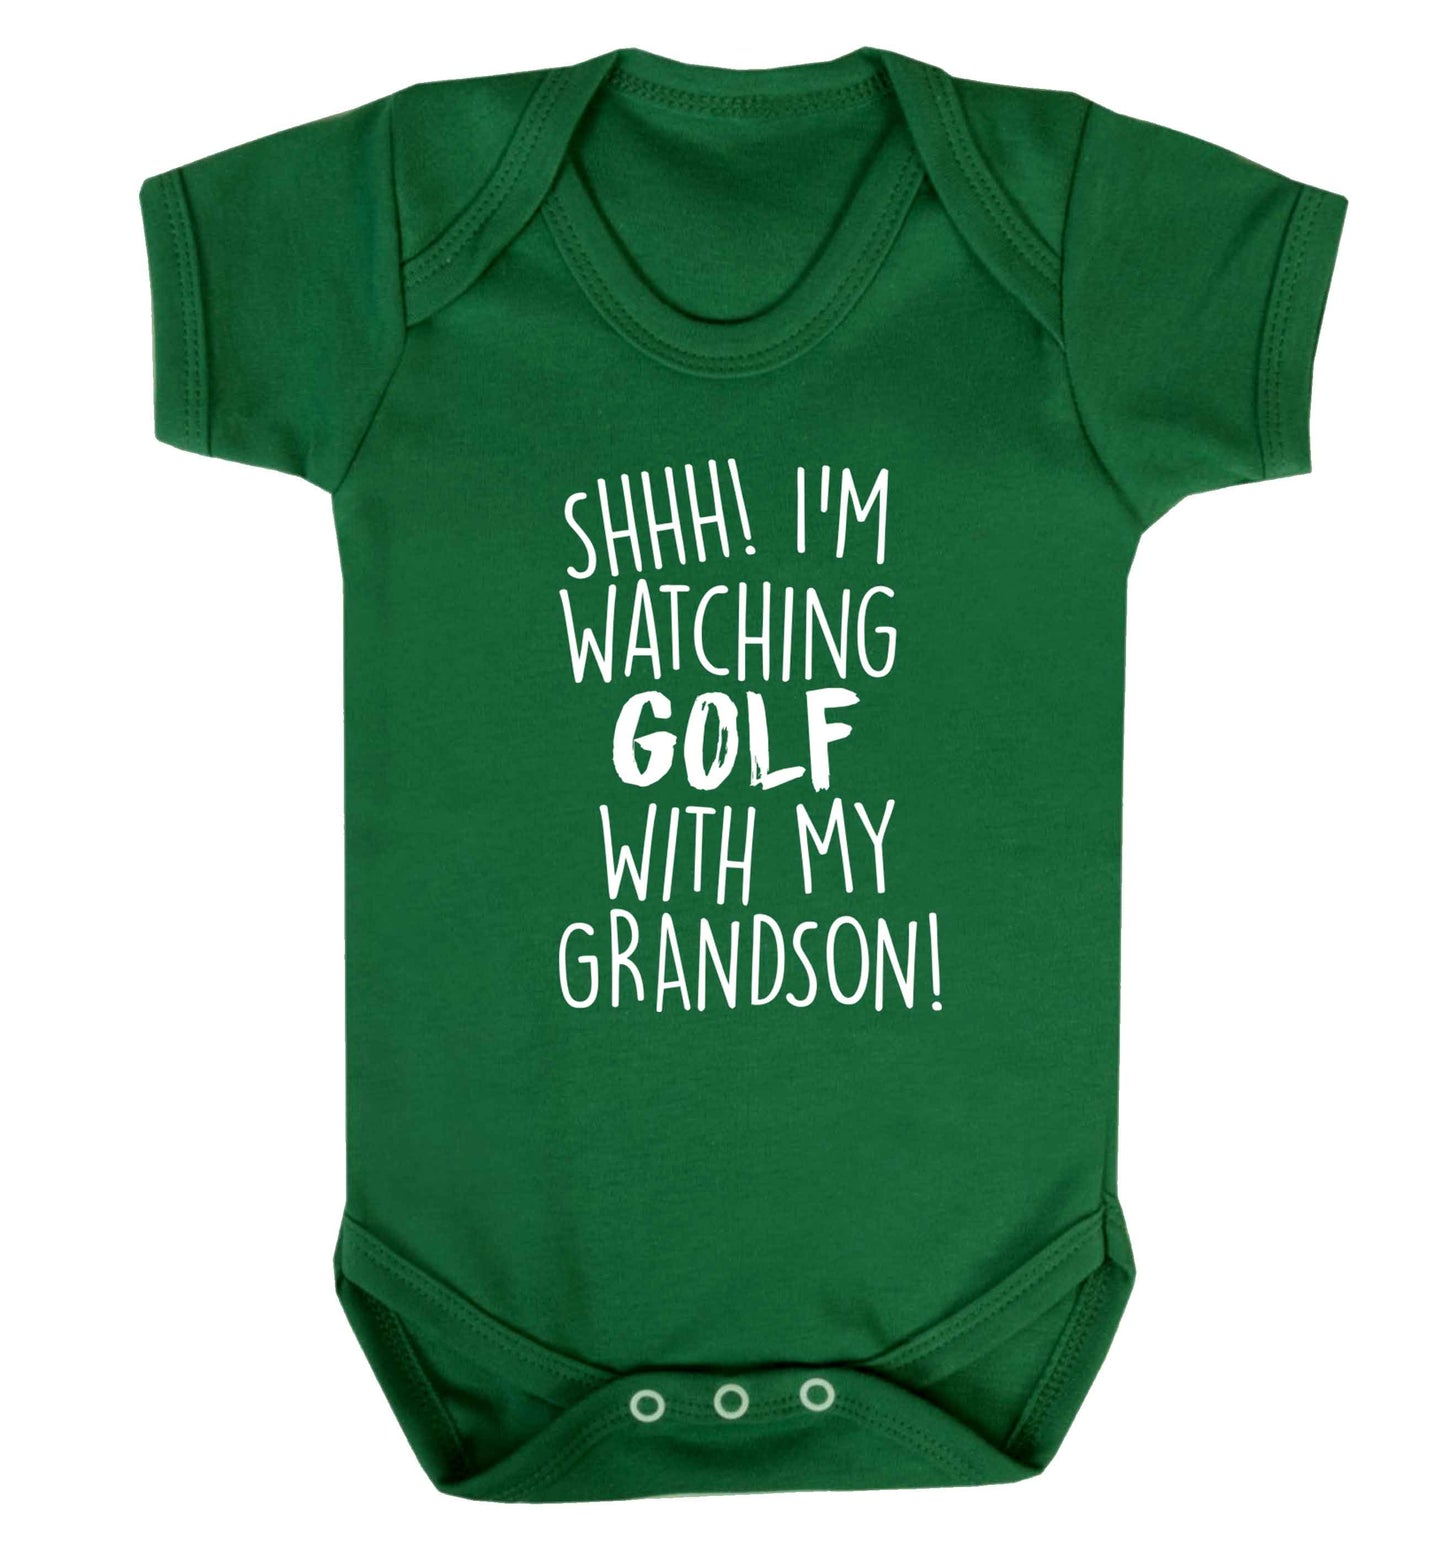 Shh I'm watching golf with my grandsonBaby Vest green 18-24 months